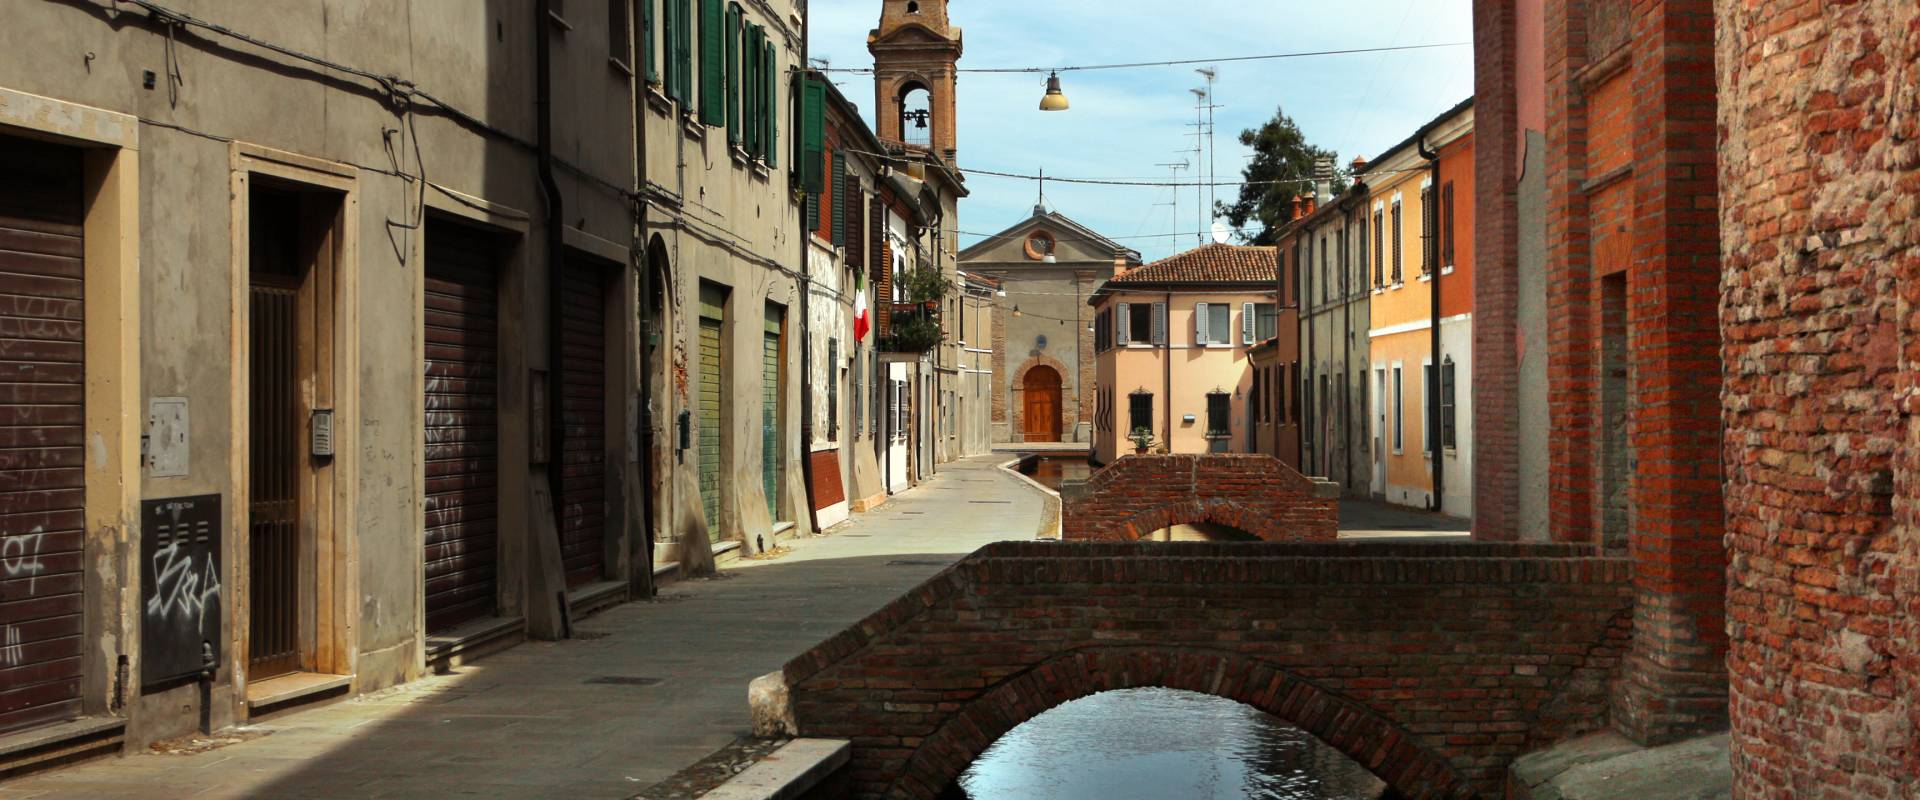 Comacchio, via del rosario 01 photo by Sailko